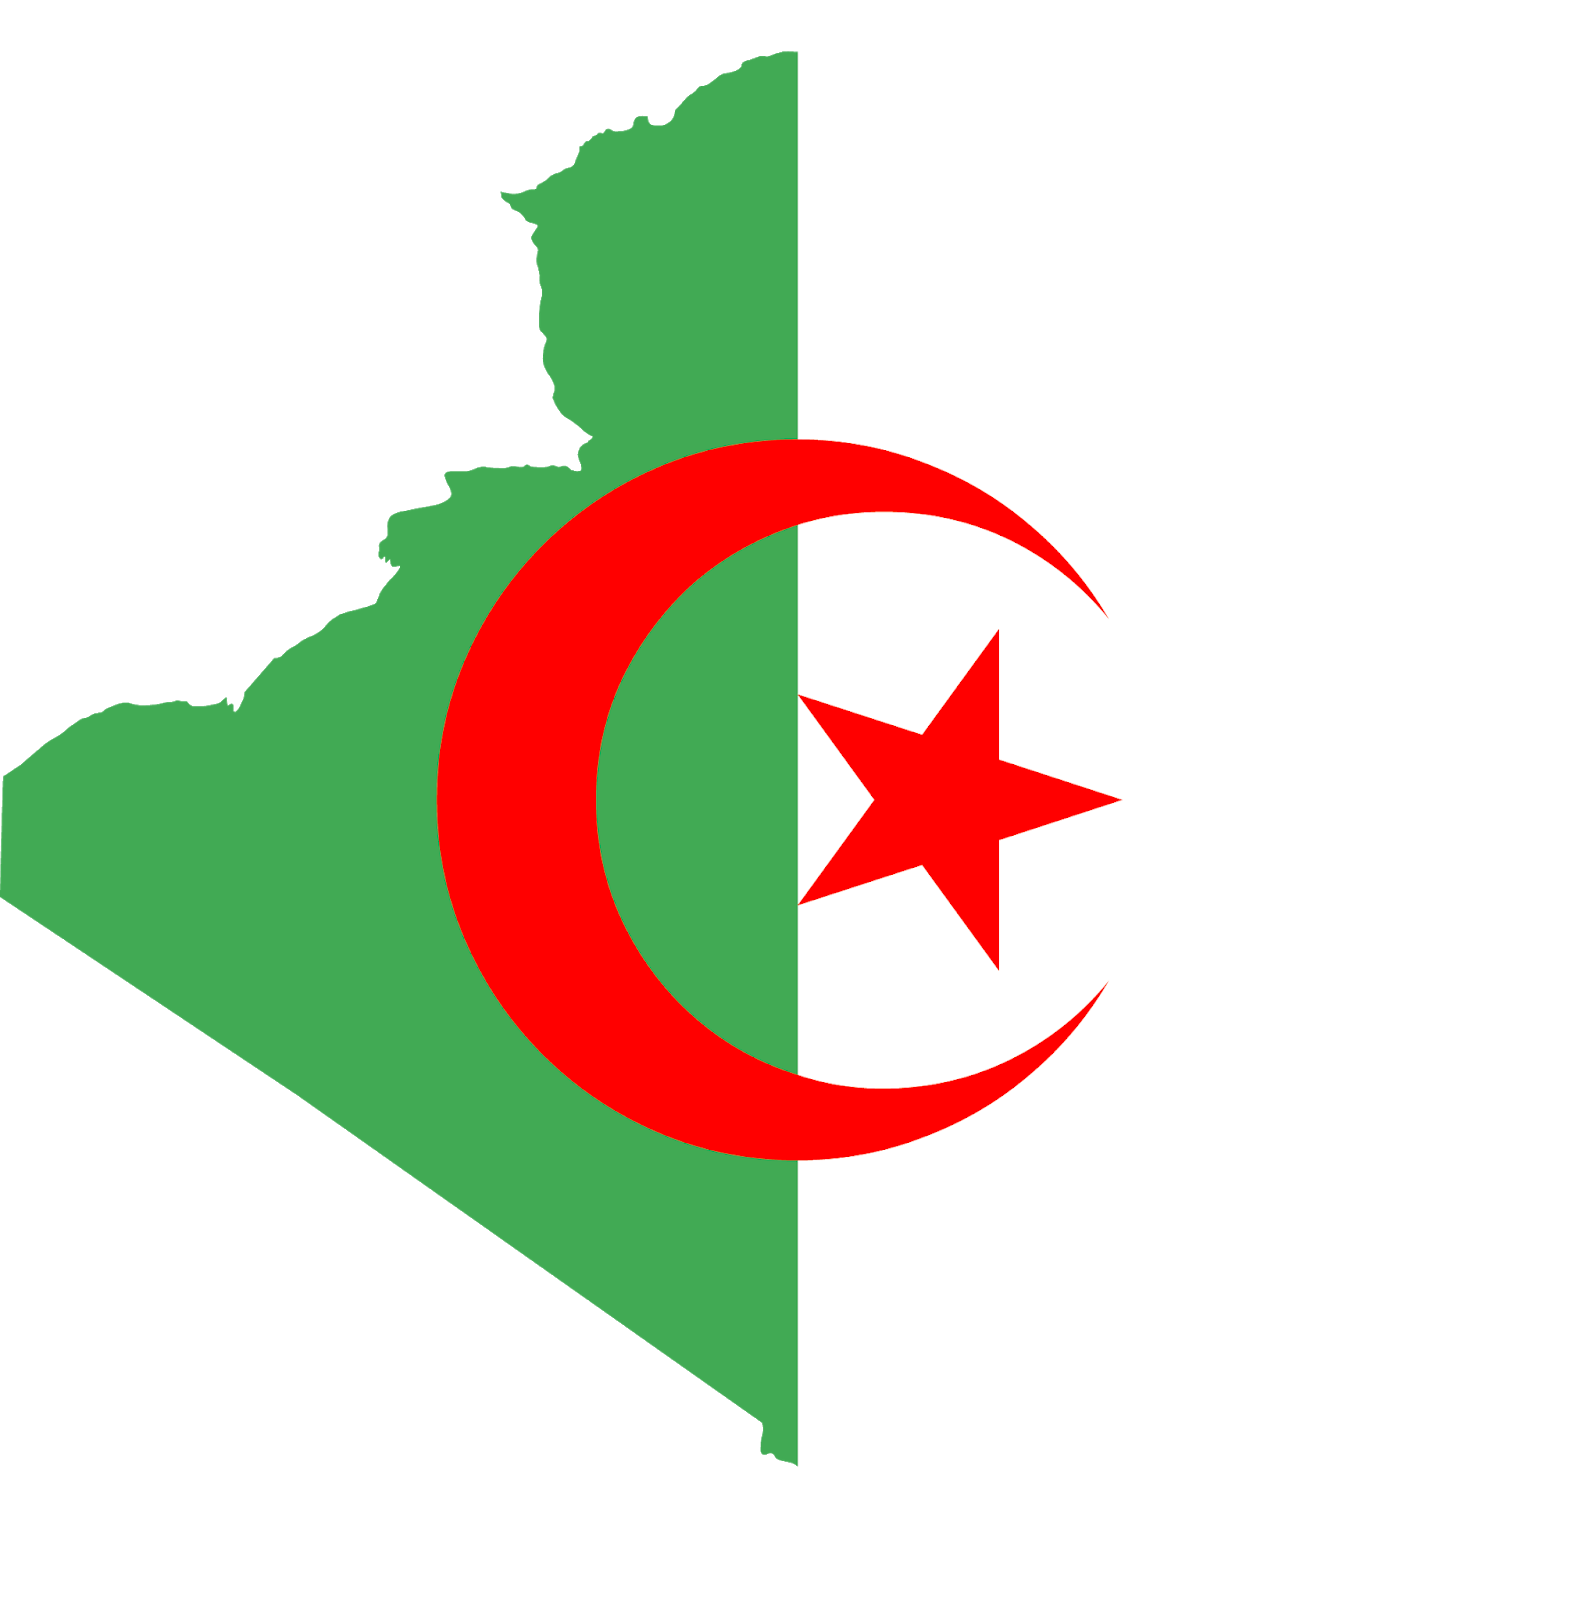 تحميل تصميم الجزائر , صورة علم الجزائر , صورة خريطة الجزائر